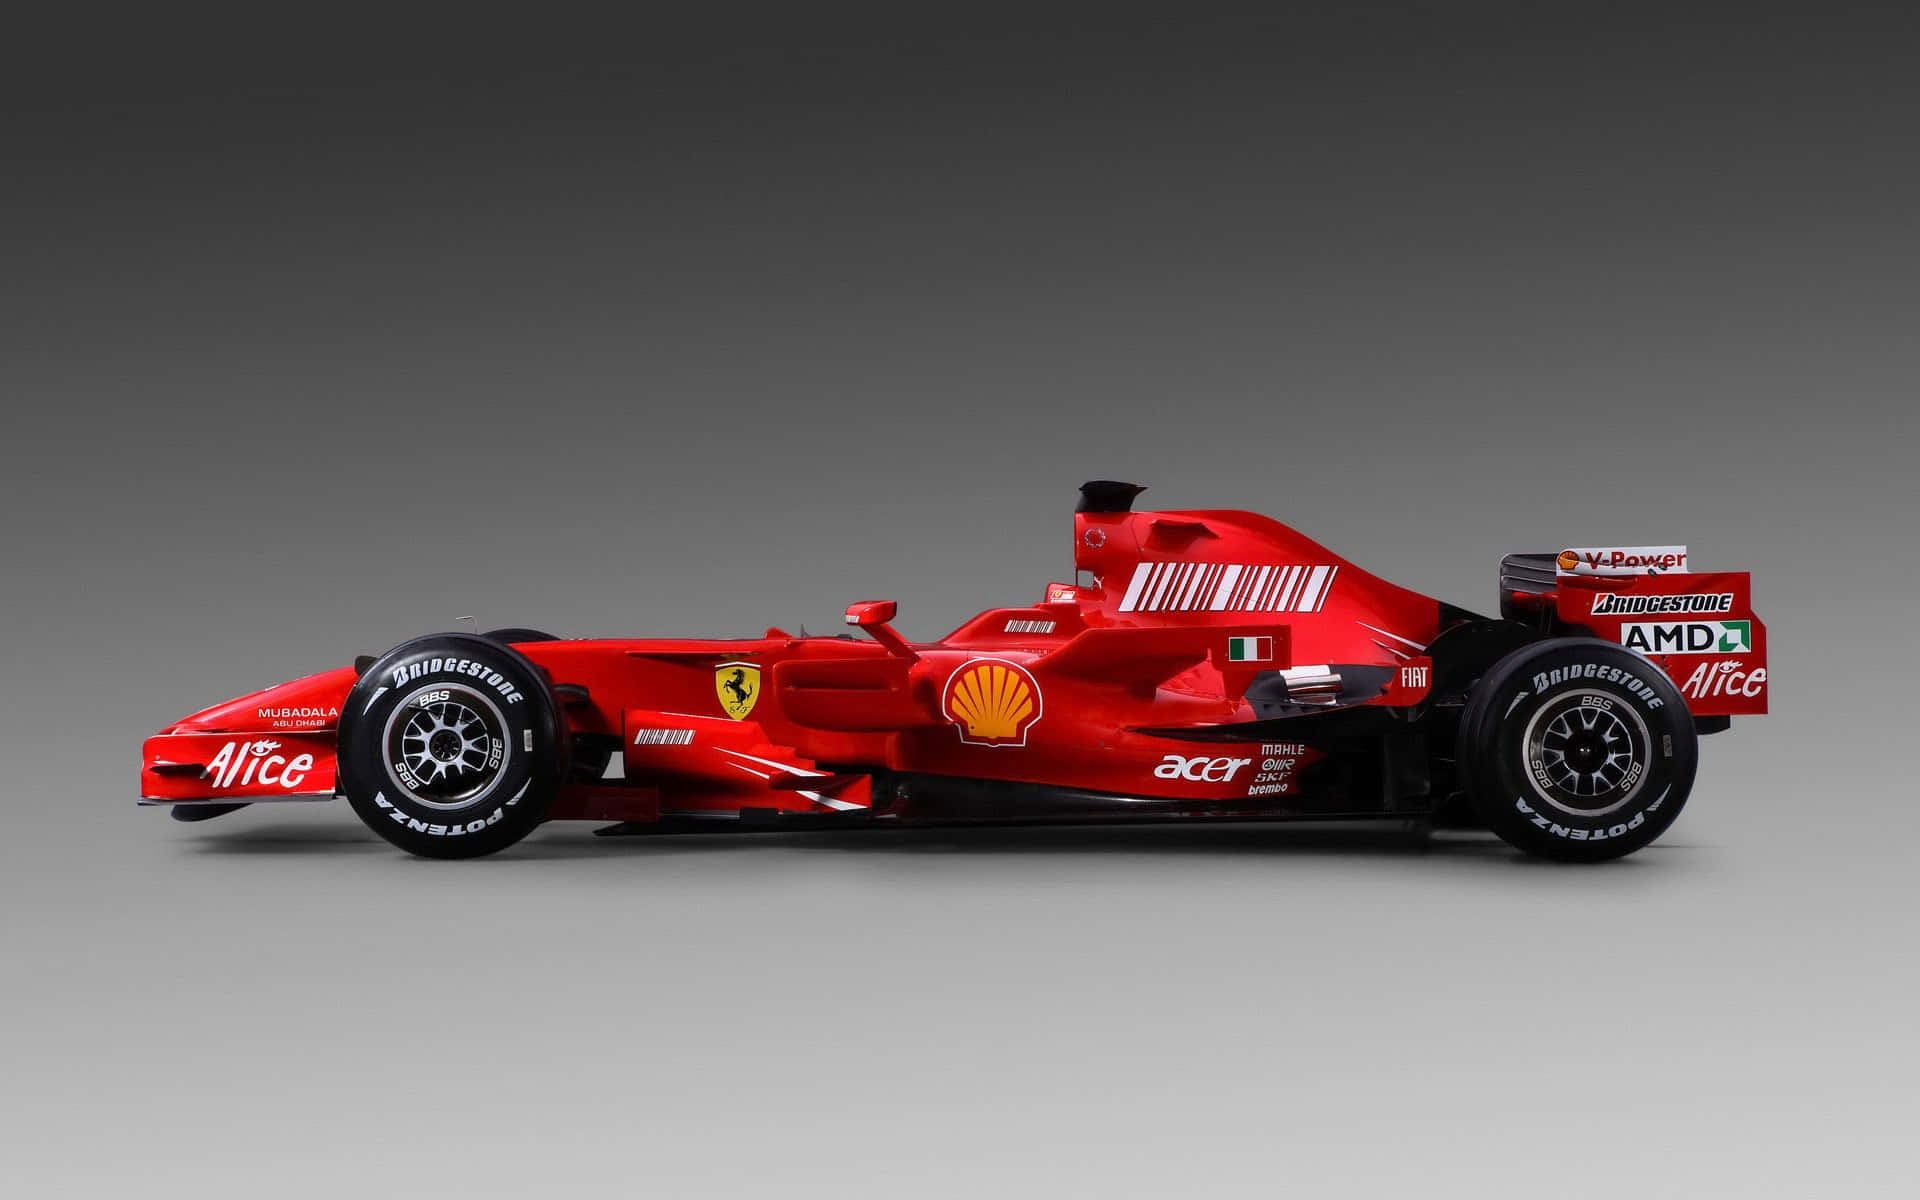 Ferrari Formula 1 Car on the Starting Line Wallpaper